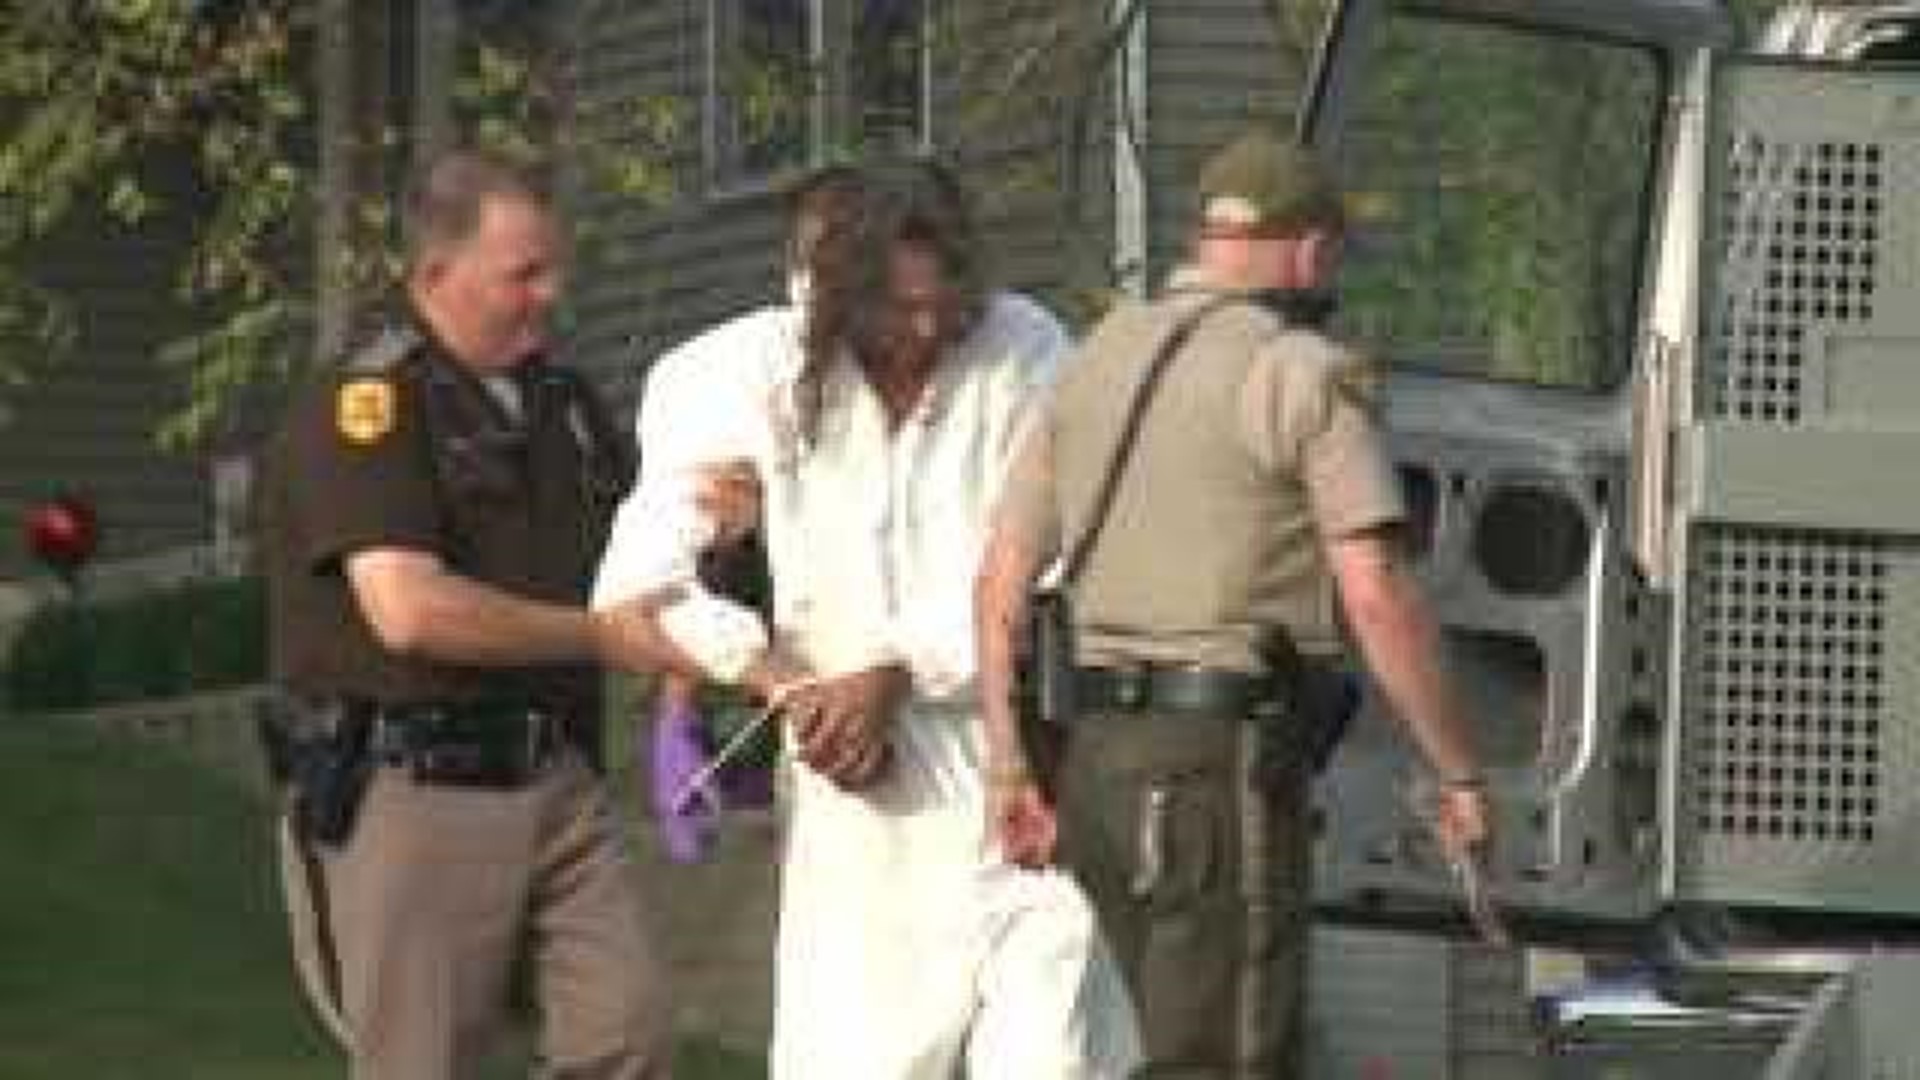 5 arrested in Dixon, IA drug raid